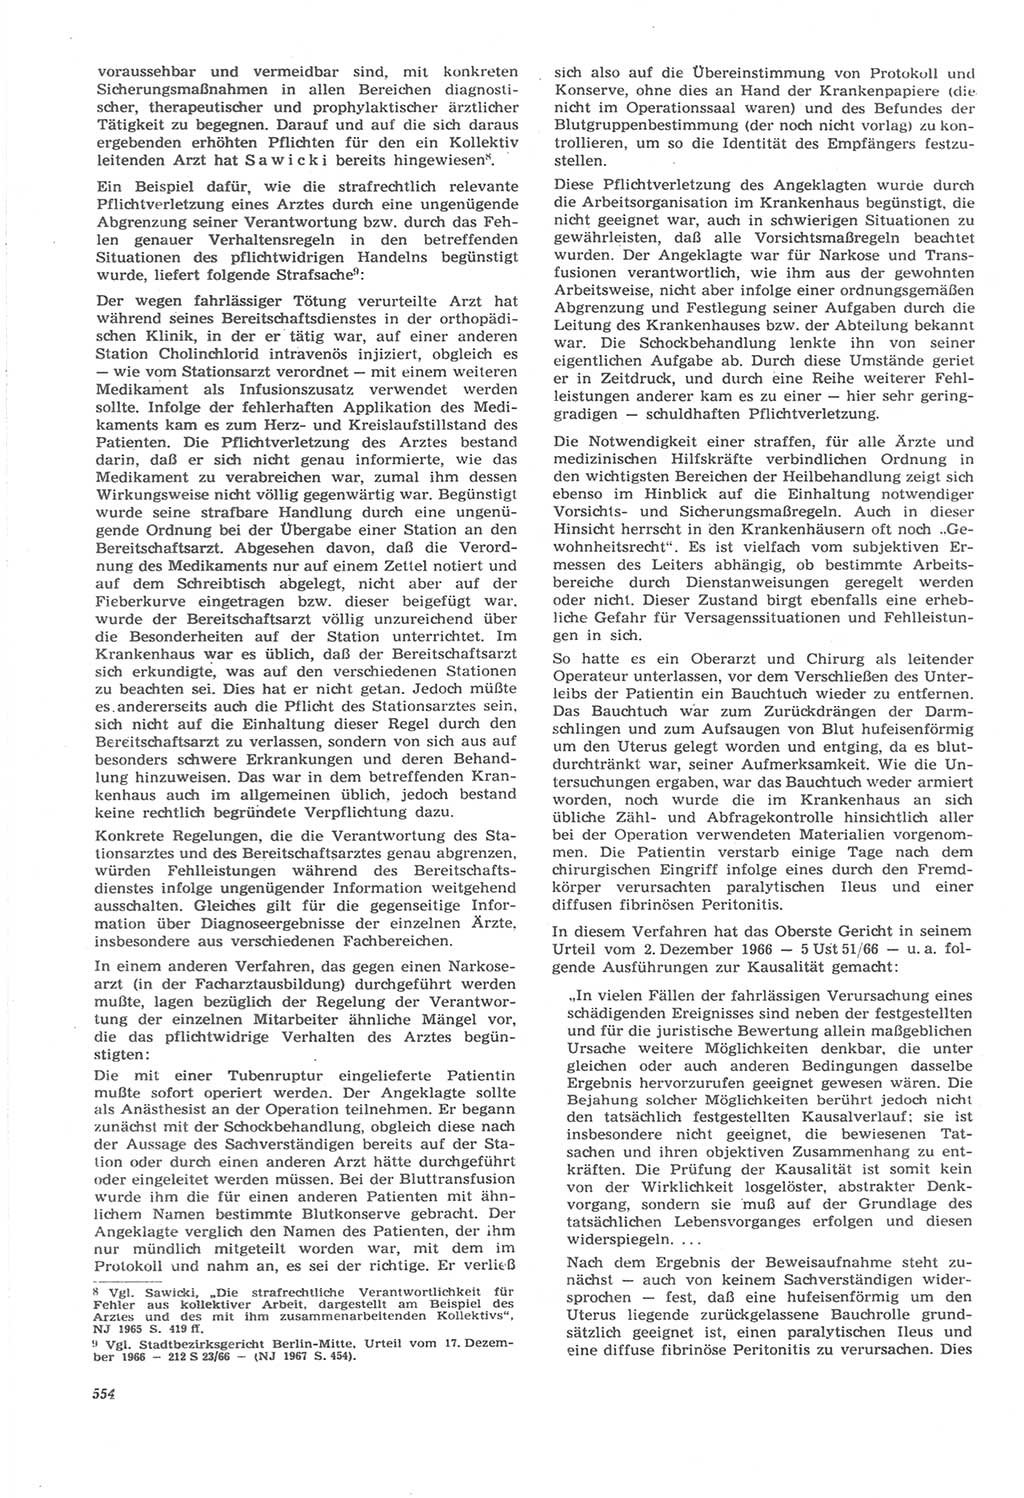 Neue Justiz (NJ), Zeitschrift für Recht und Rechtswissenschaft [Deutsche Demokratische Republik (DDR)], 22. Jahrgang 1968, Seite 554 (NJ DDR 1968, S. 554)